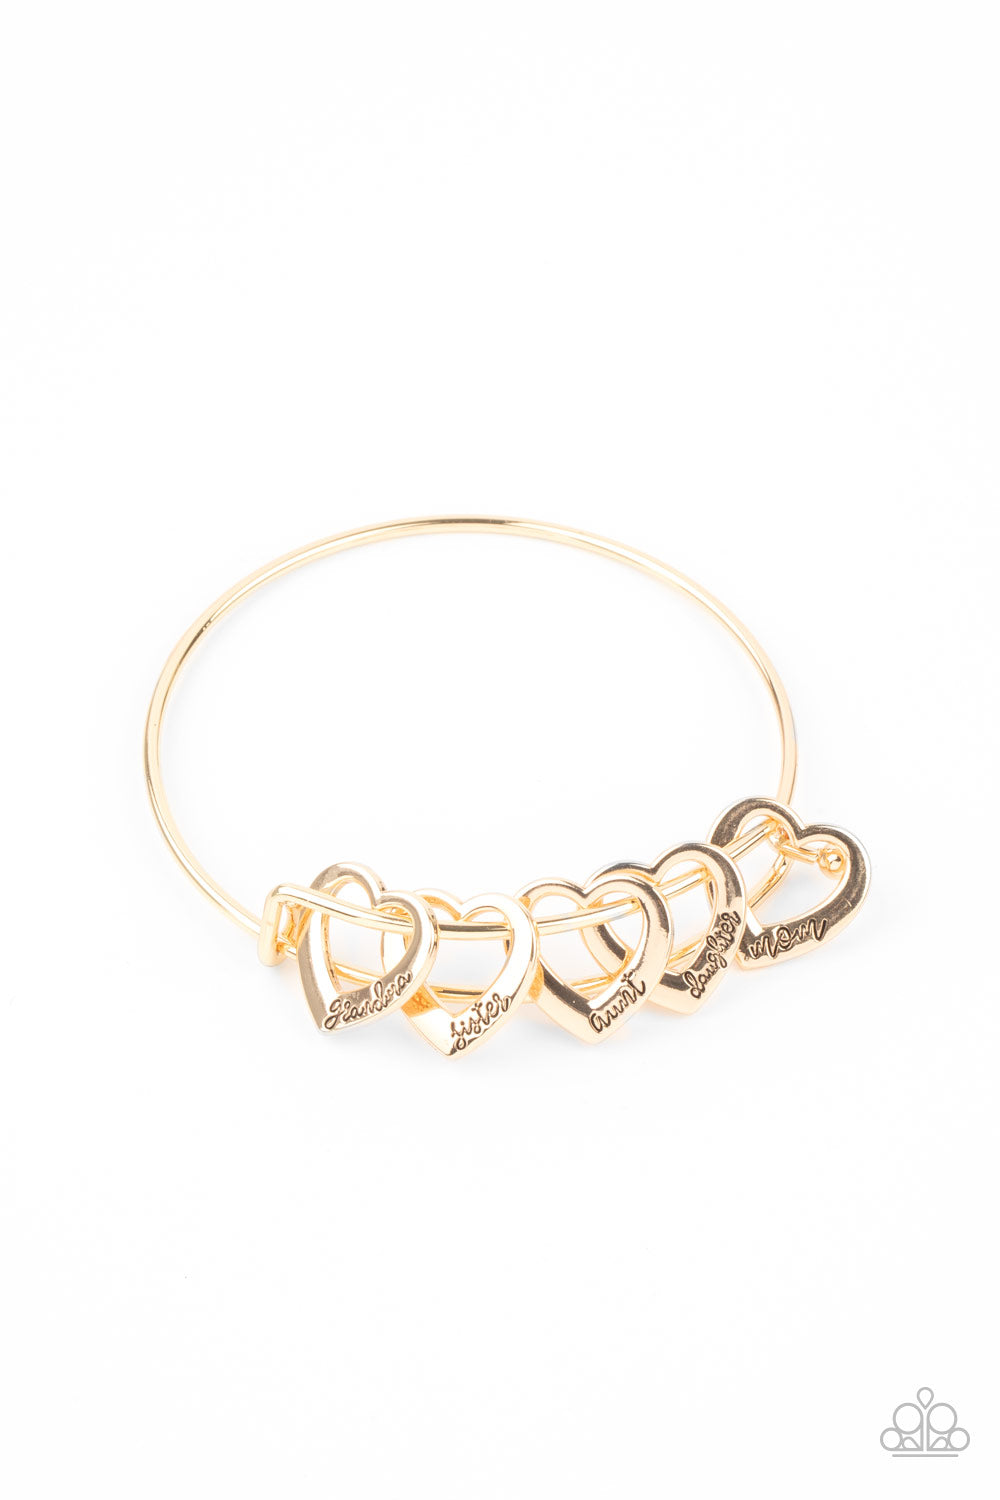 A Charmed Society Gold Bracelet